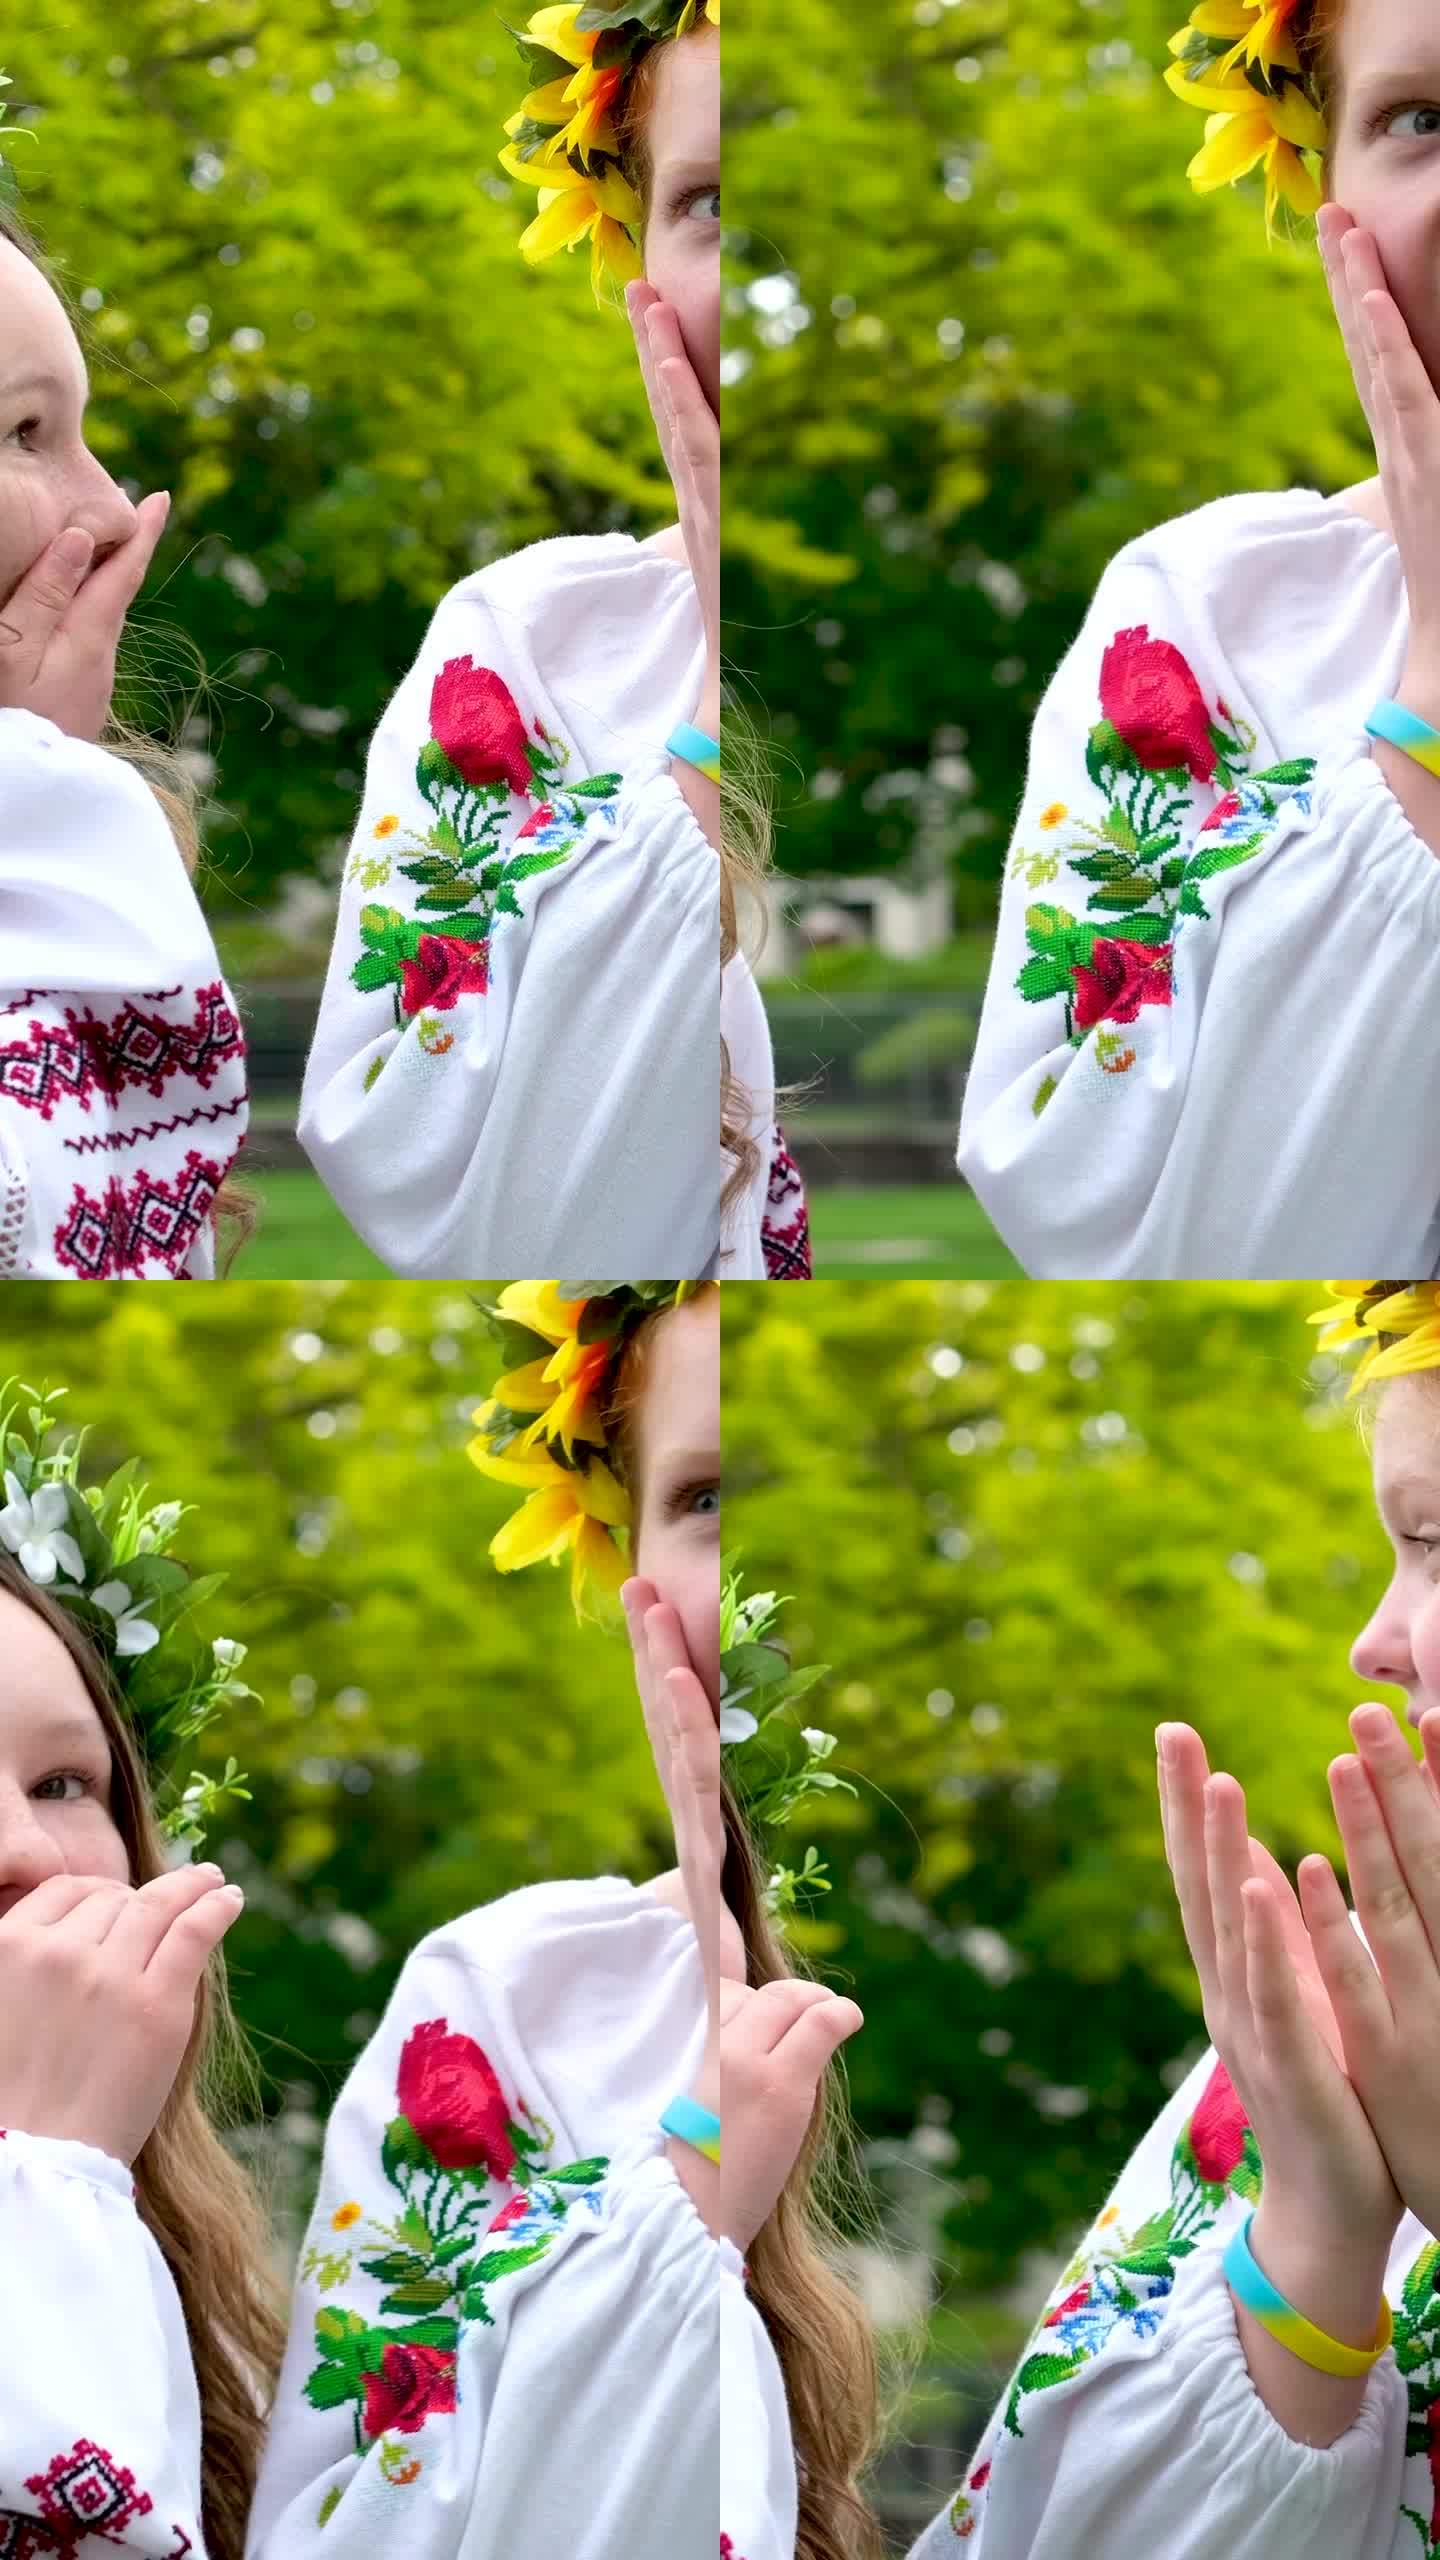 美丽的年轻女孩青少年张开嘴笑美丽的刺绣衬衫花环向日葵经典传统乌克兰刺绣庆祝活动在婚礼前的性质